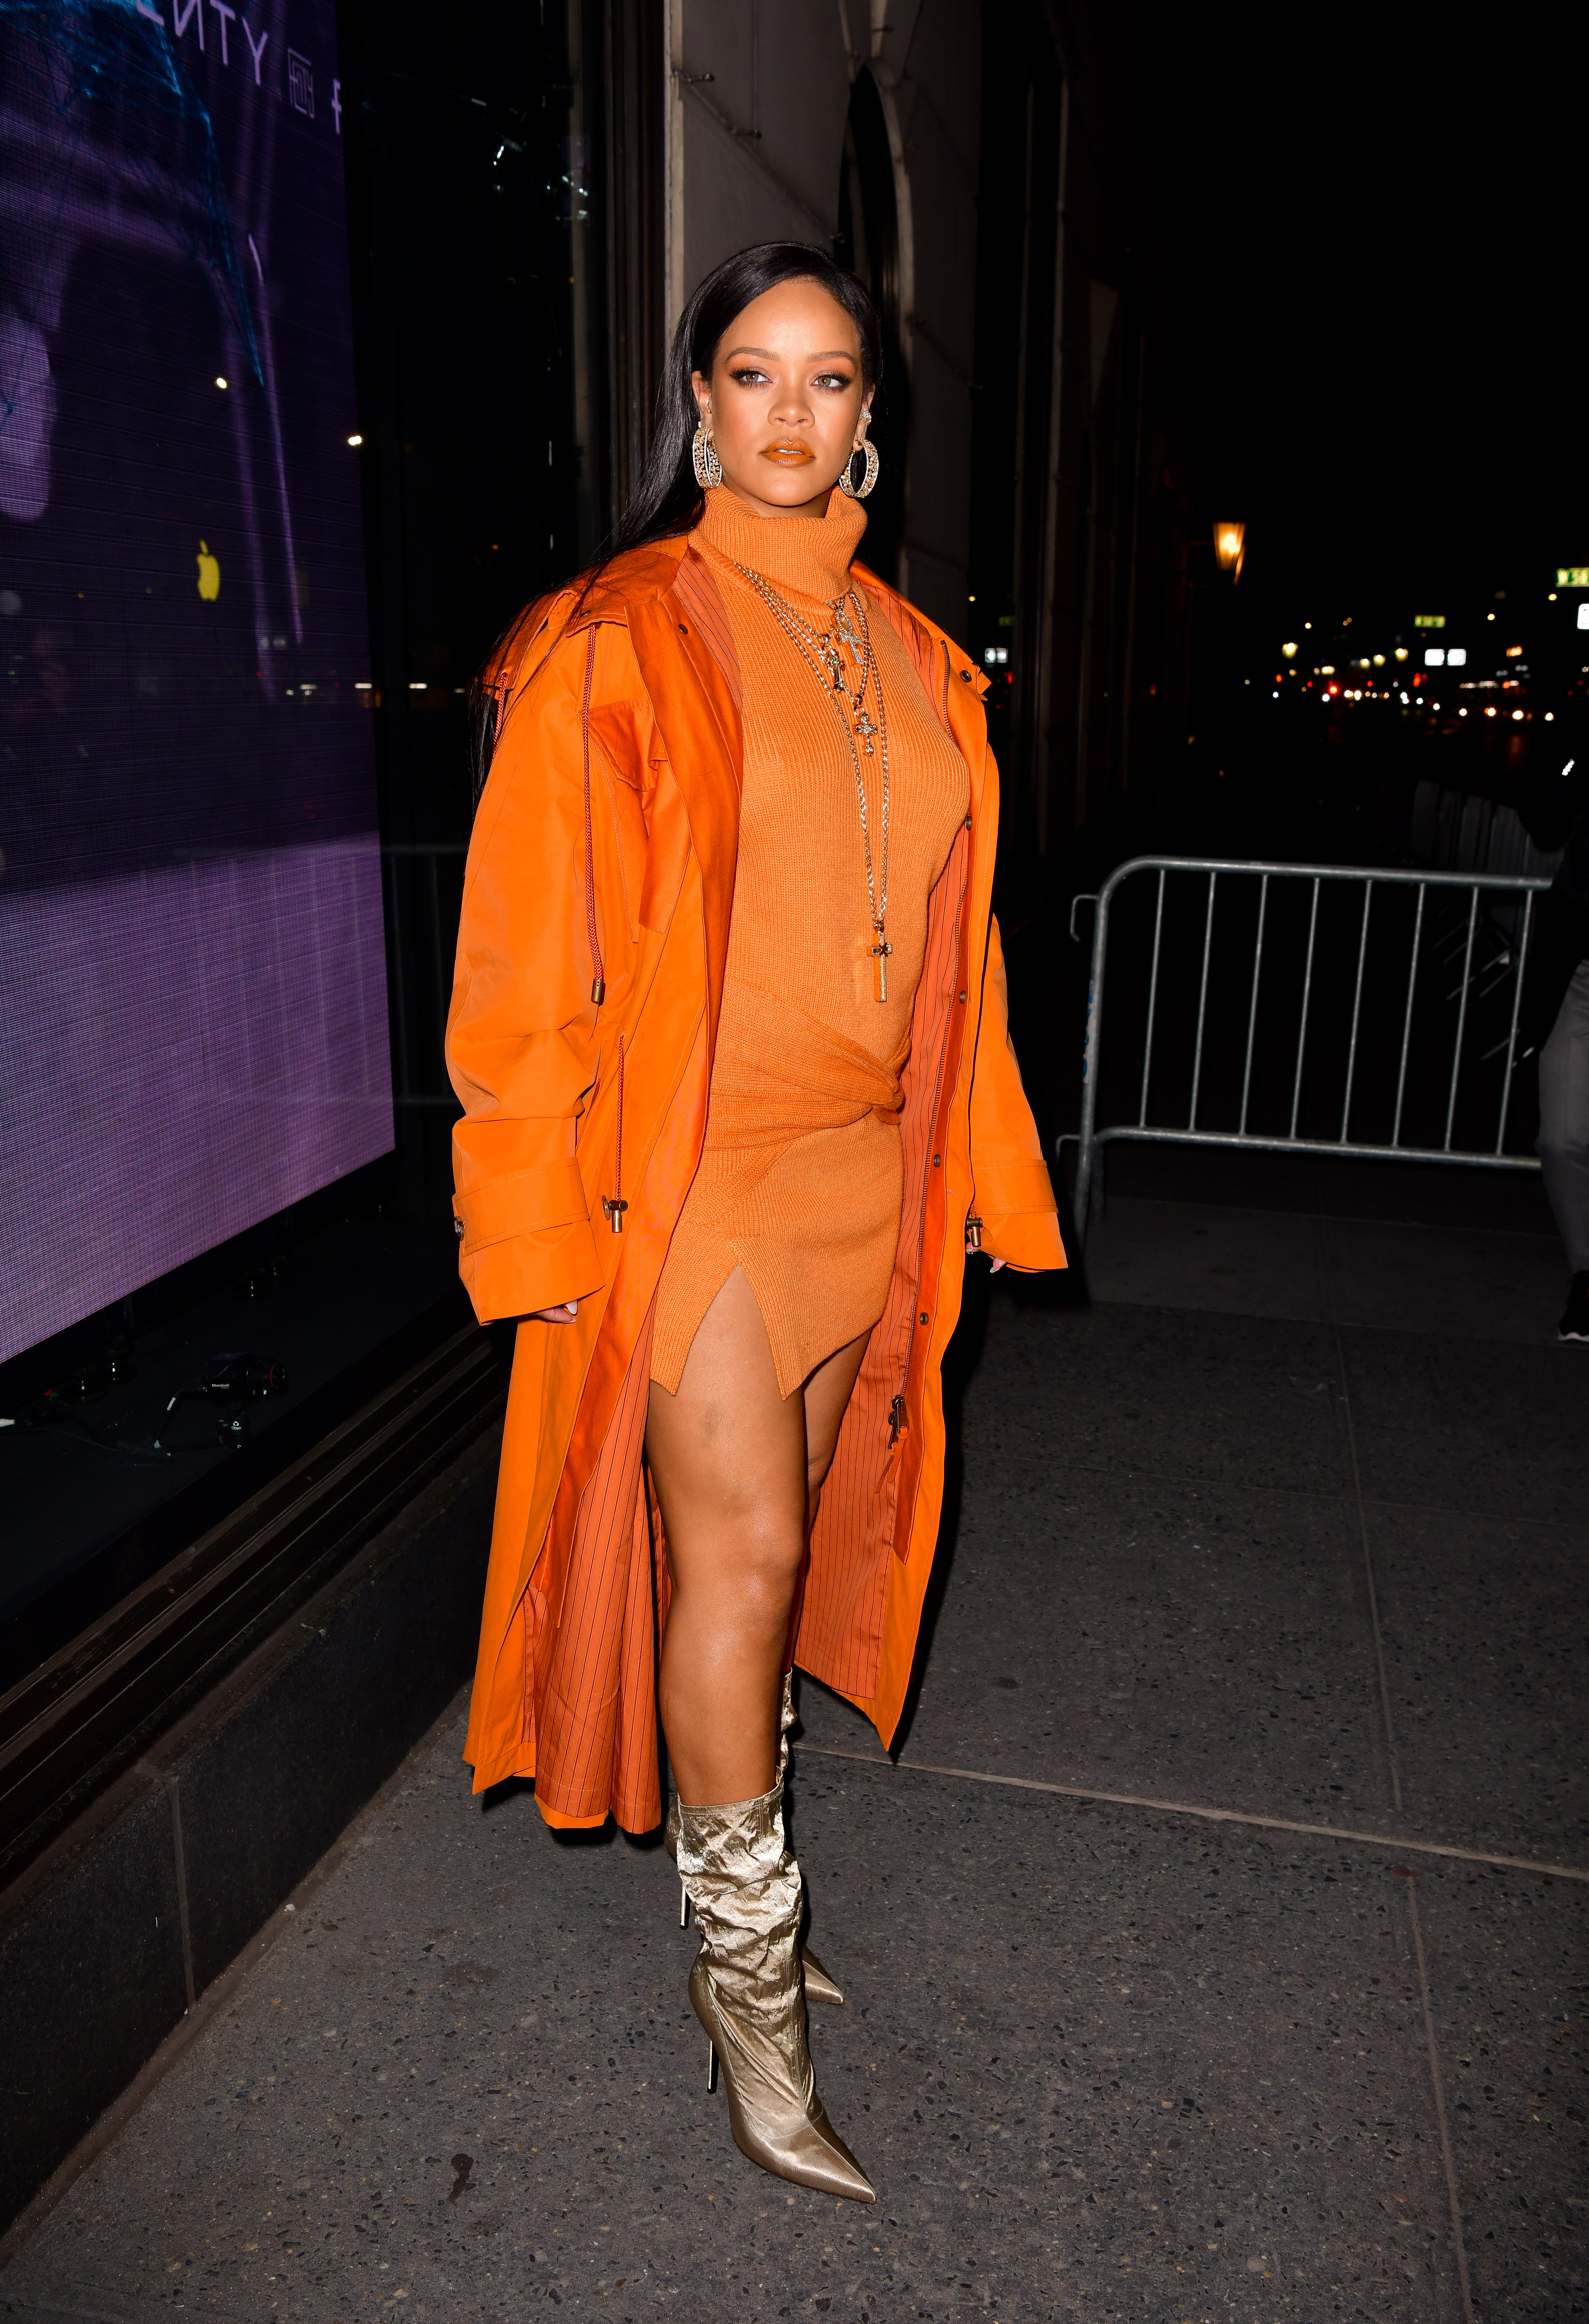 Rihanna usando vestido de gola alta laranja, sobretudo no mesmo tom de laranja e bota slouchy dourada. Ela está com vários colares dourados, olhando para o lado com expressão facial séria.